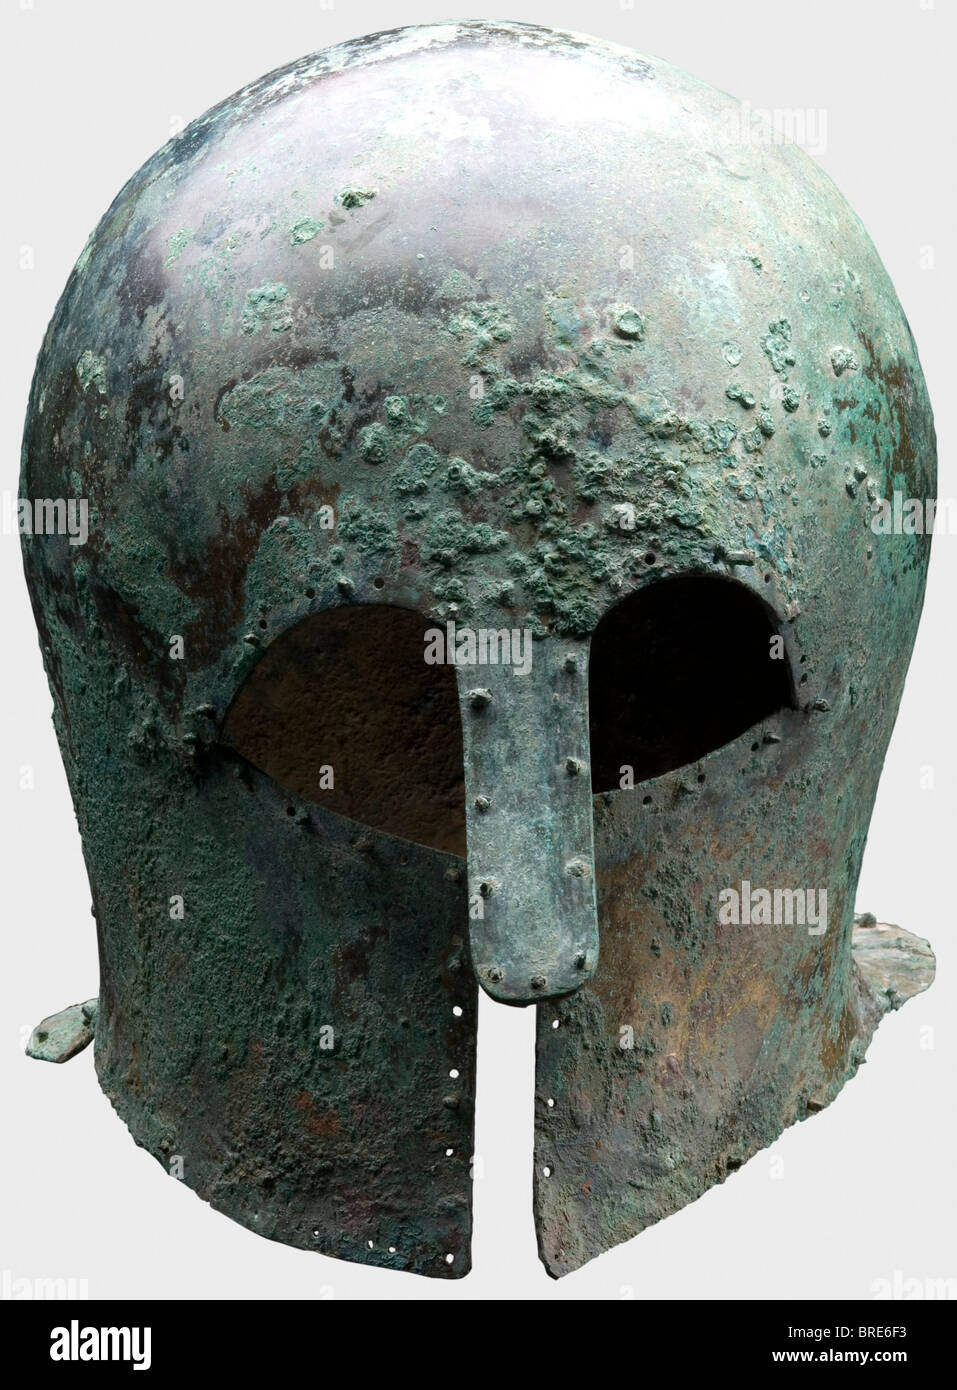 Ein korinthischer Helm, 7./6. Jahrhundert v. Chr. Dickwandiger, schwerer korinthischer Bronze-Helm mit hohem Schädel und verlängertem Nackenschutz. Große Augenausschnitte, leicht konkave Wangenstücke und ein robuster, genieteter langer Nasenschutz, der nach außen gebogen ist. Umgeben von gebohrten Löchern, einige paarweise, und einige halten noch die dekorativen oder auskleidung Nieten mit runden Köpfen. Höhe 22,1 cm. Gewicht 1288 g Metalloberflächen mit hellbrauner, dunkler und hellgrüner Patina. Schmutzrückstände im Inneren. Isolierte Korrosionsgruben an der Oberfläche. Sehr gute Metallrückhaltung. Sammlung Axel Guttmann (H 147/ A, Stockfoto